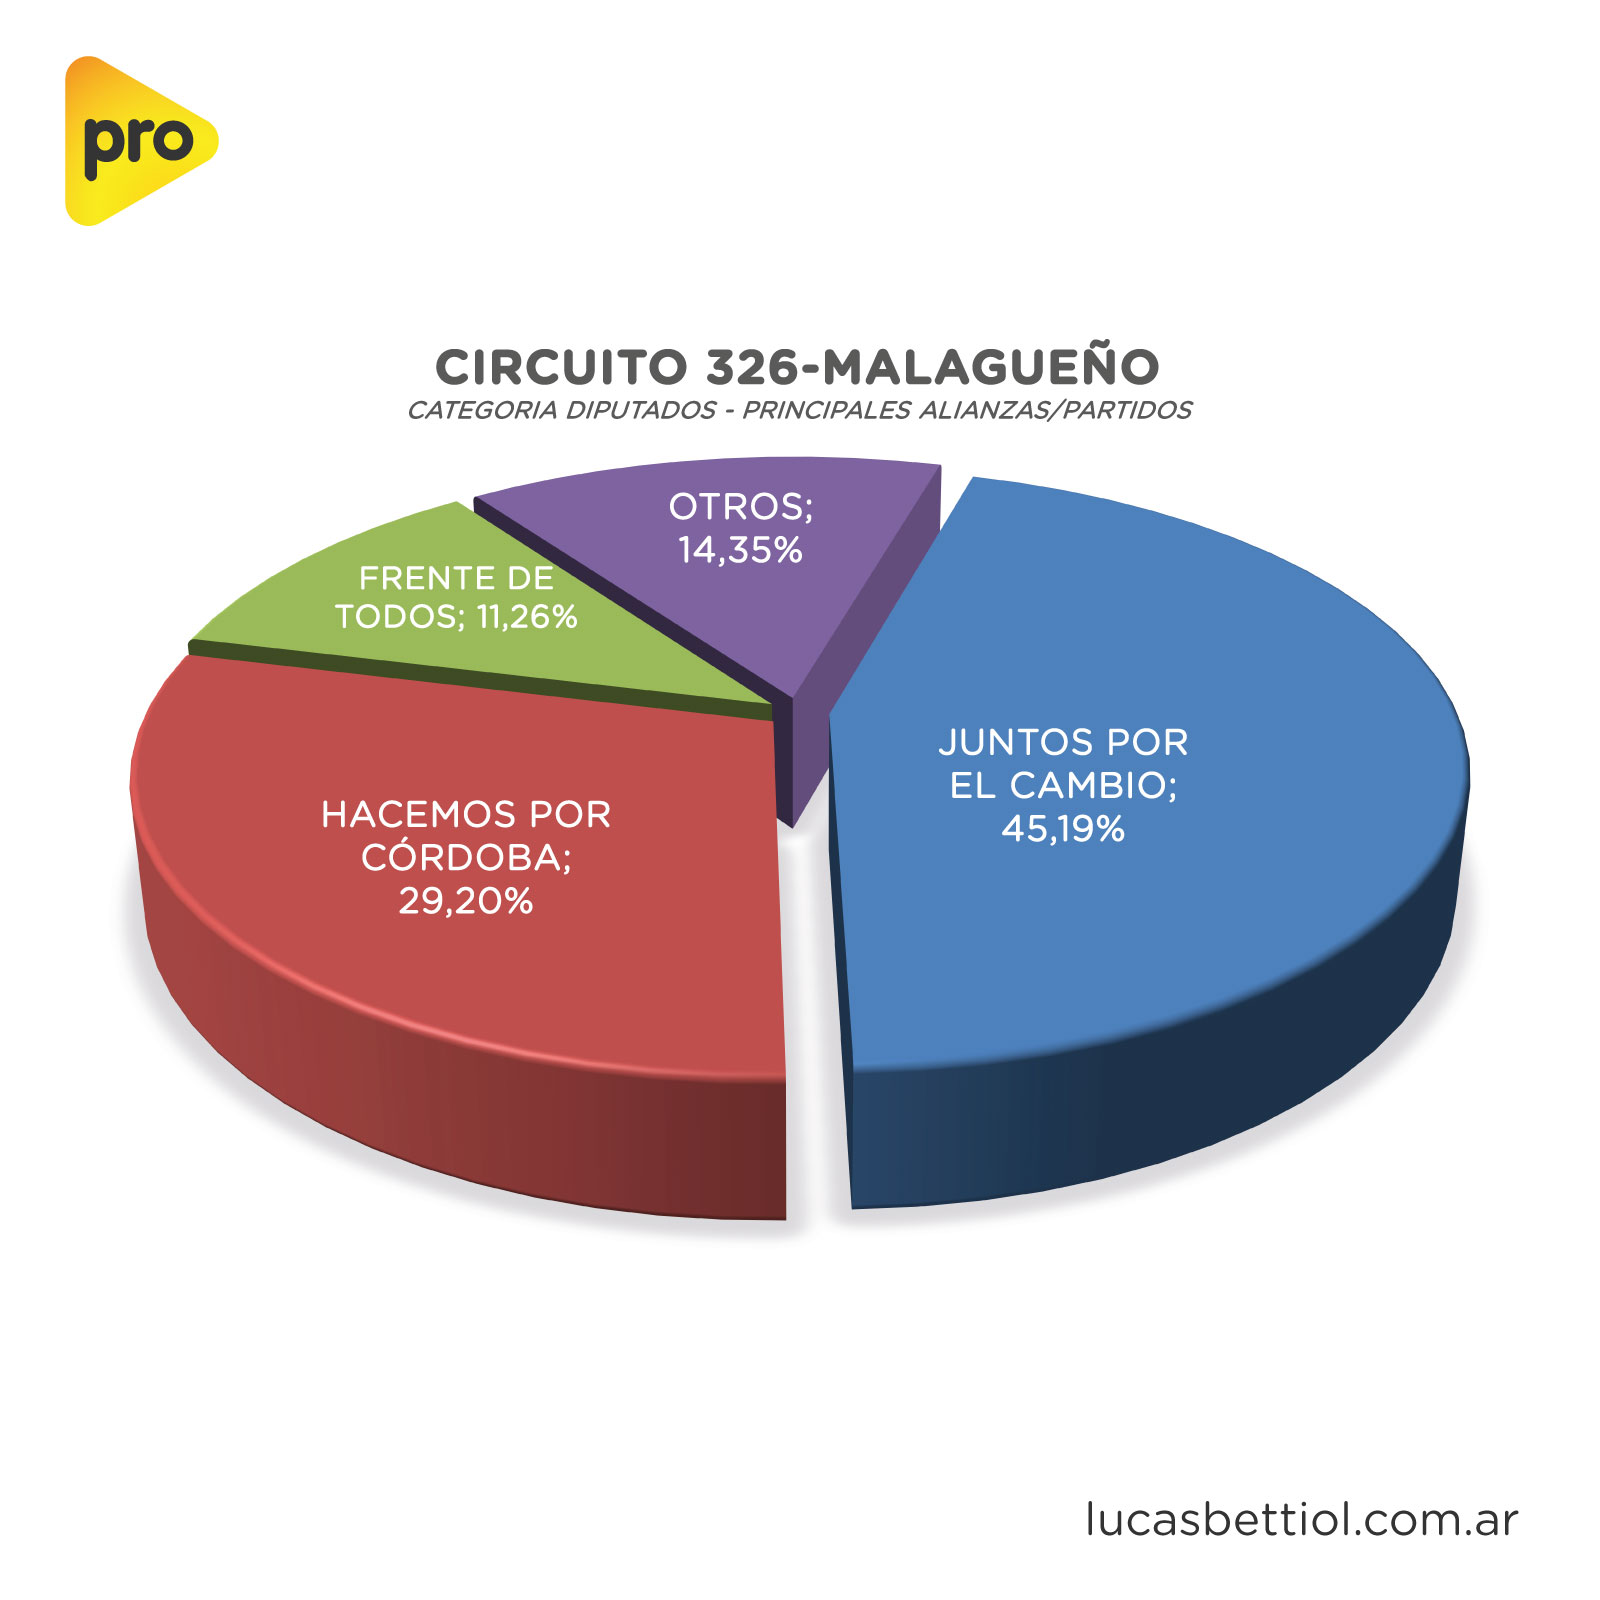 Elecciones PASO 2021 - Categoría Diputados - Gráfica de porcentuales que obtuvieron en el circuito 326-Malagueño las principales alianzas